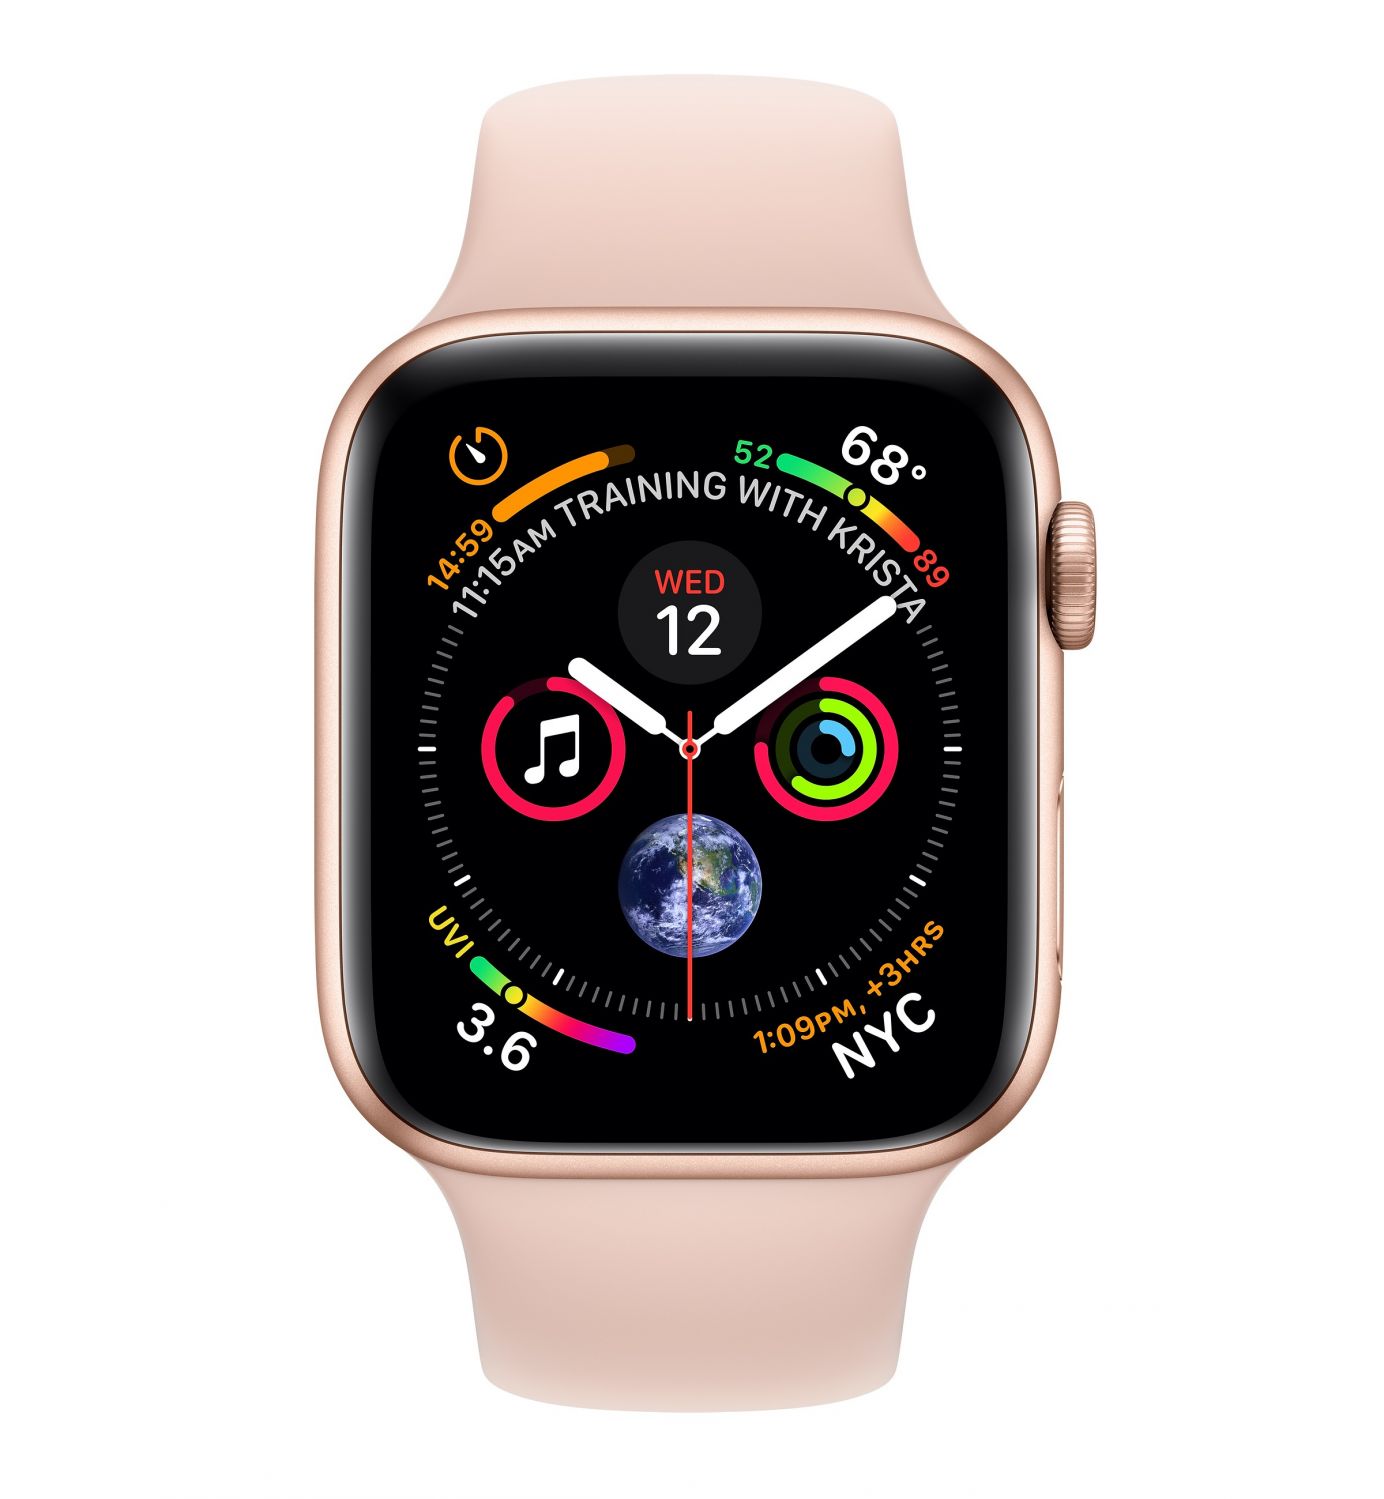 MU6F2TY/A - Reloj inteligent Apple Watch Seri 4 reloj inteligente Oro OLED GP (satlite)